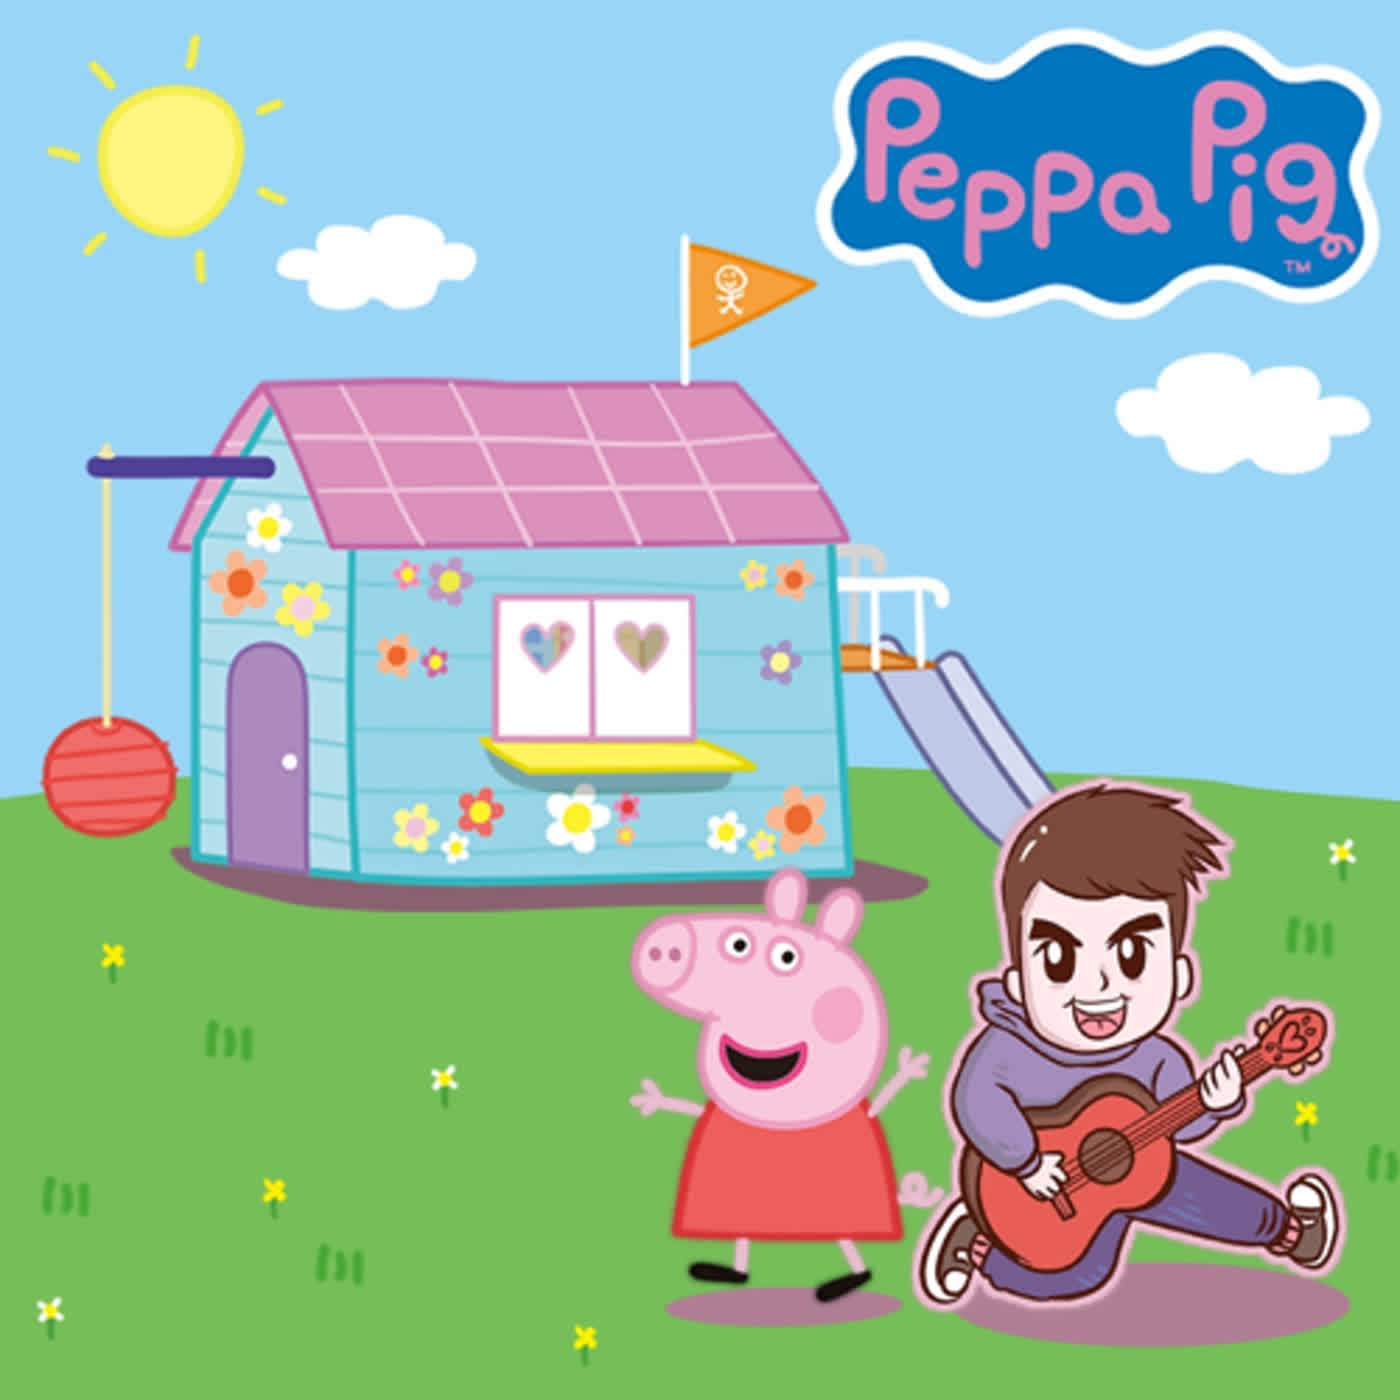 Peppa Pig 粉紅豬小妹 佩佩豬 拼圖收集任務